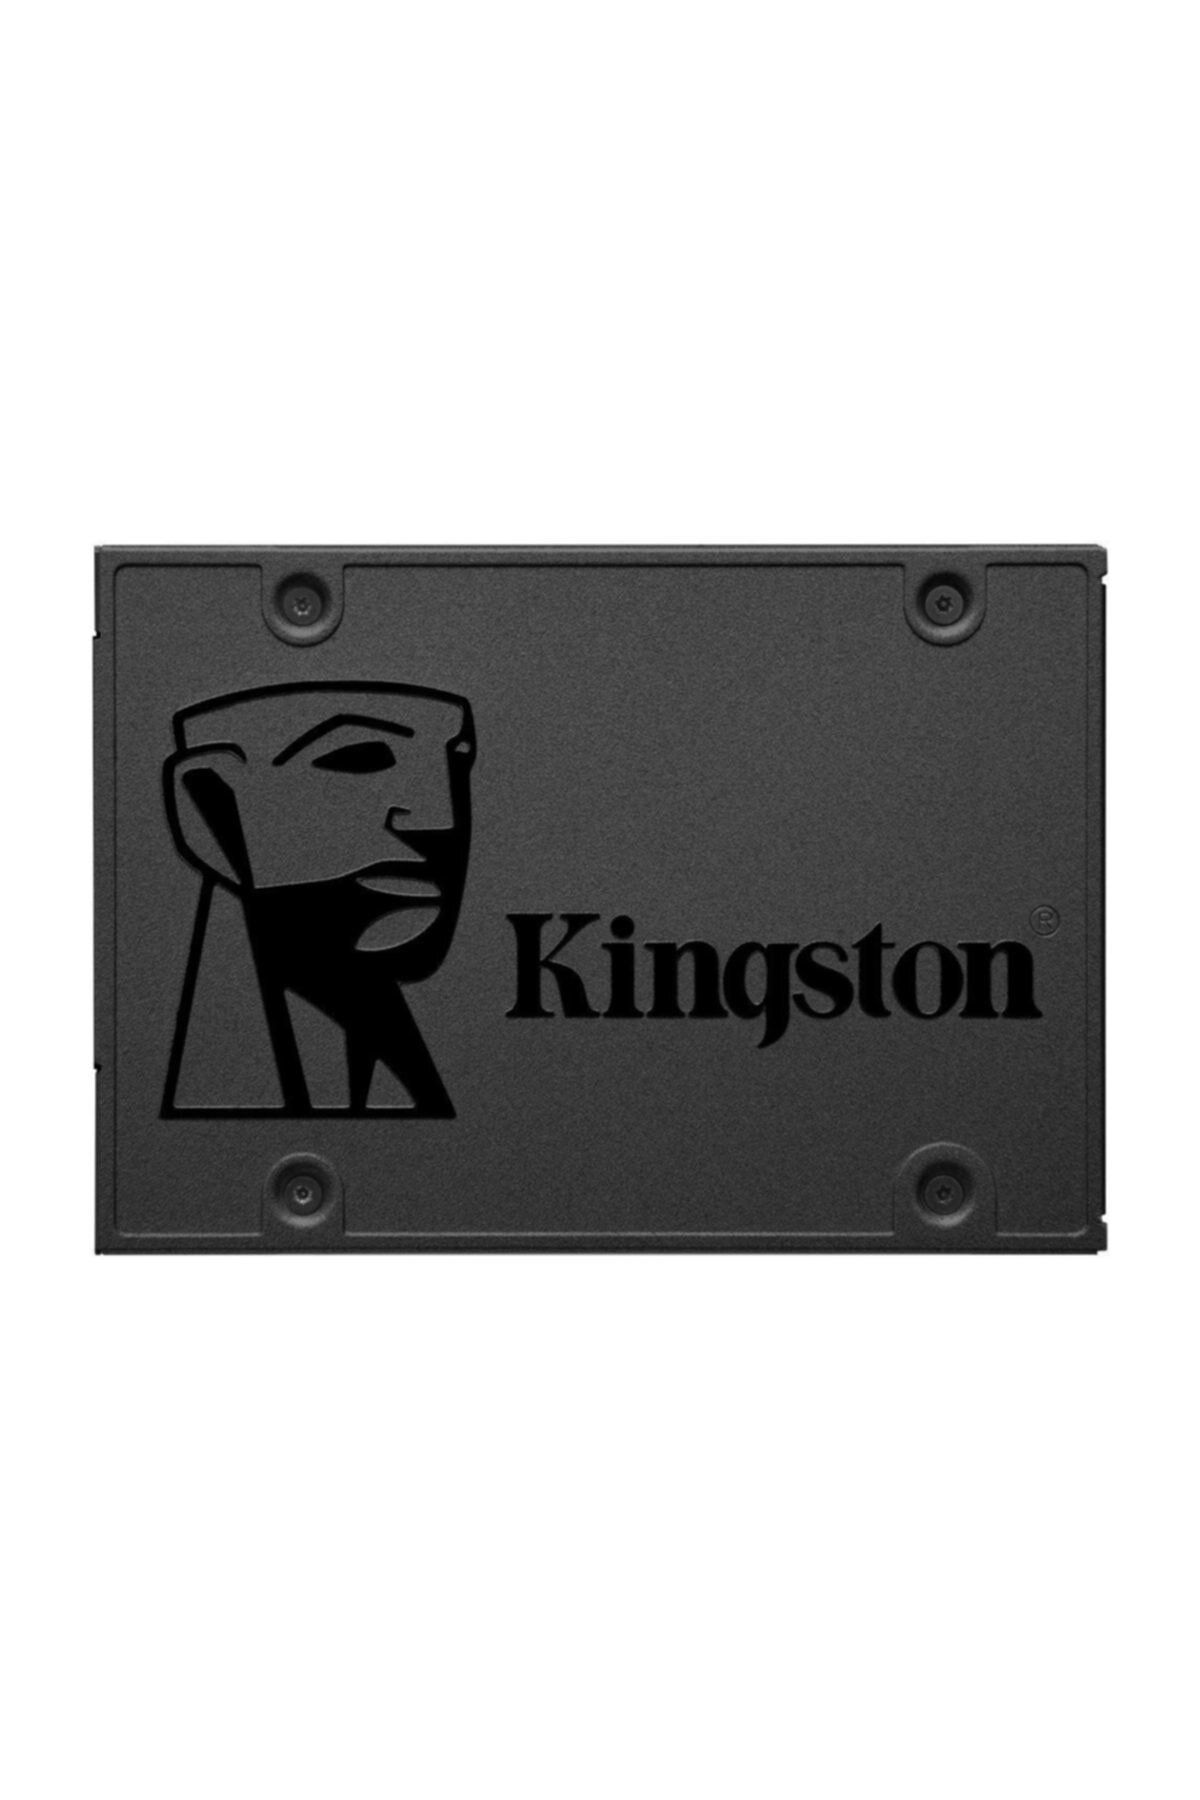 Kingston A400 960 Gb 2.5" Sata3 Ssd 500/450 (SA400S37/960G)